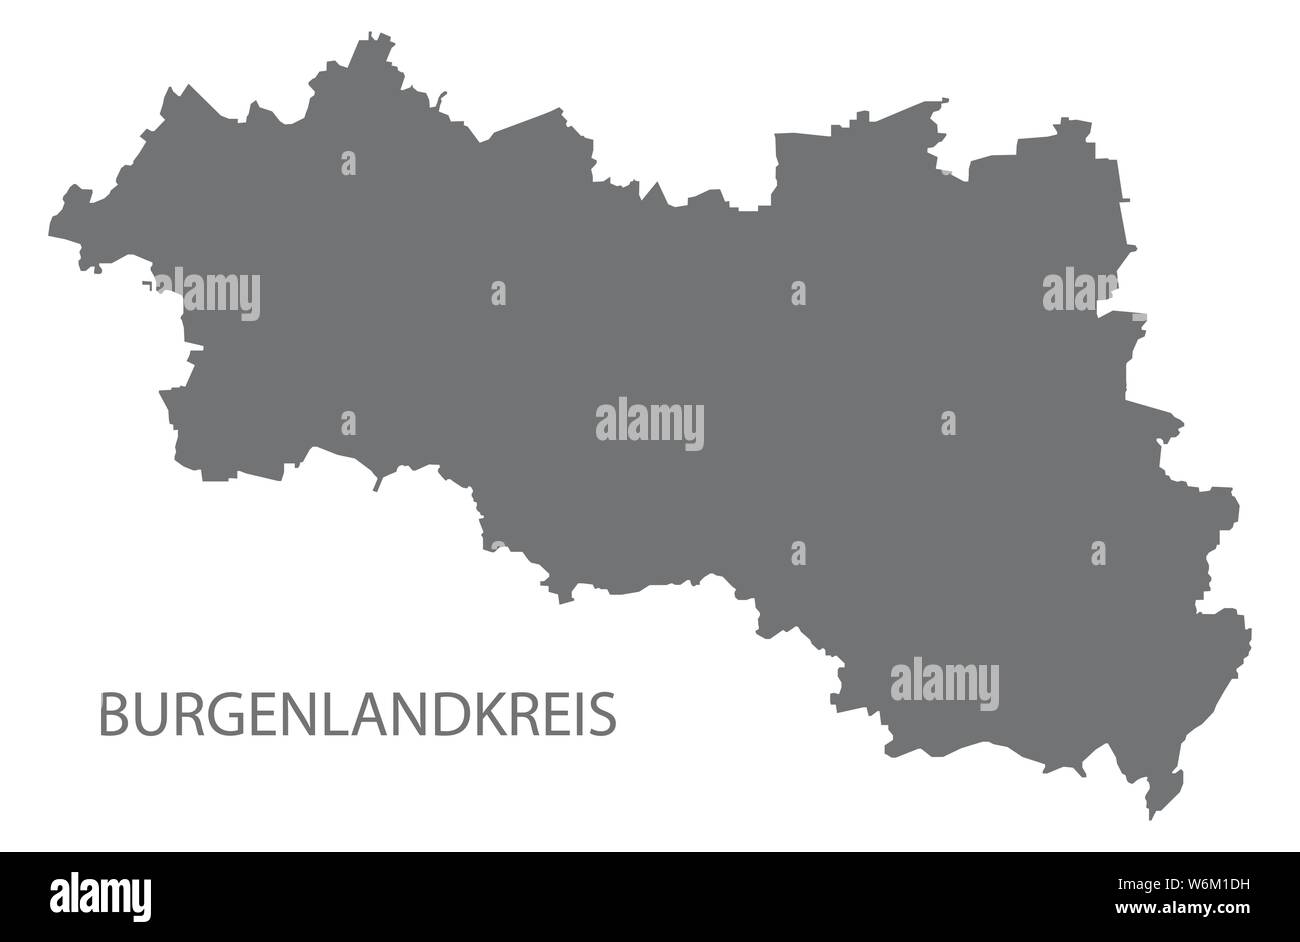 Burgenlandkreis gray county mappa di Sassonia Anhalt Germania DE Illustrazione Vettoriale